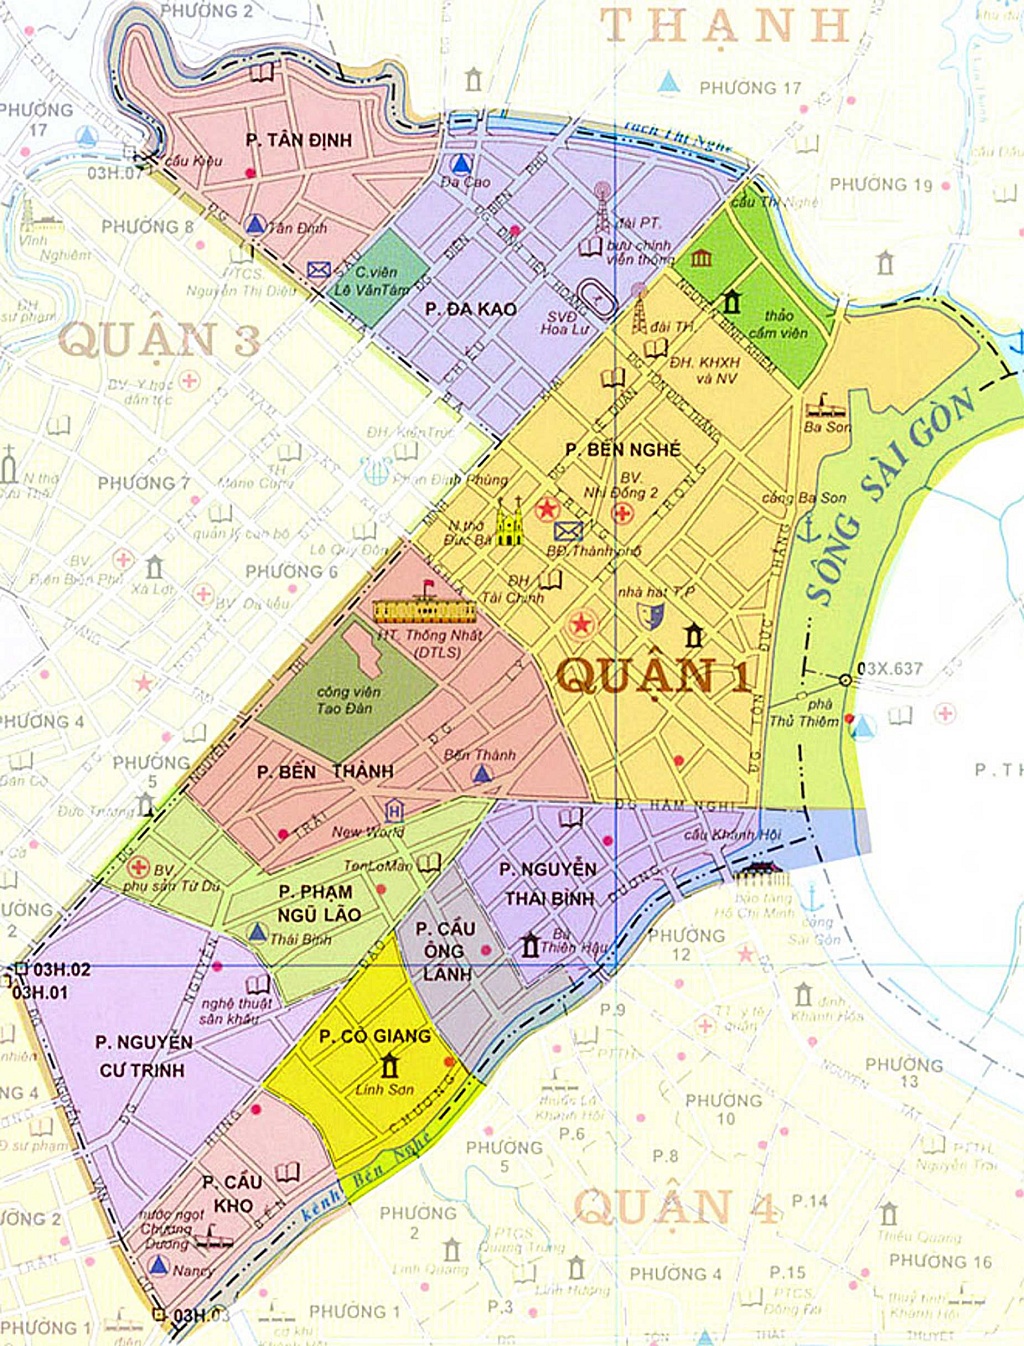 Bạn muốn tìm bản đồ của Quận 1, Hồ Chí Minh? Hãy tìm kiếm ngay trên trang web của chính quyền địa phương. Bạn sẽ tìm thấy bản đồ chi tiết của khu vực này với tất cả các địa danh quan trọng nhất. Bạn có thể sử dụng bản đồ để đi du lịch hoặc làm việc tại đây.